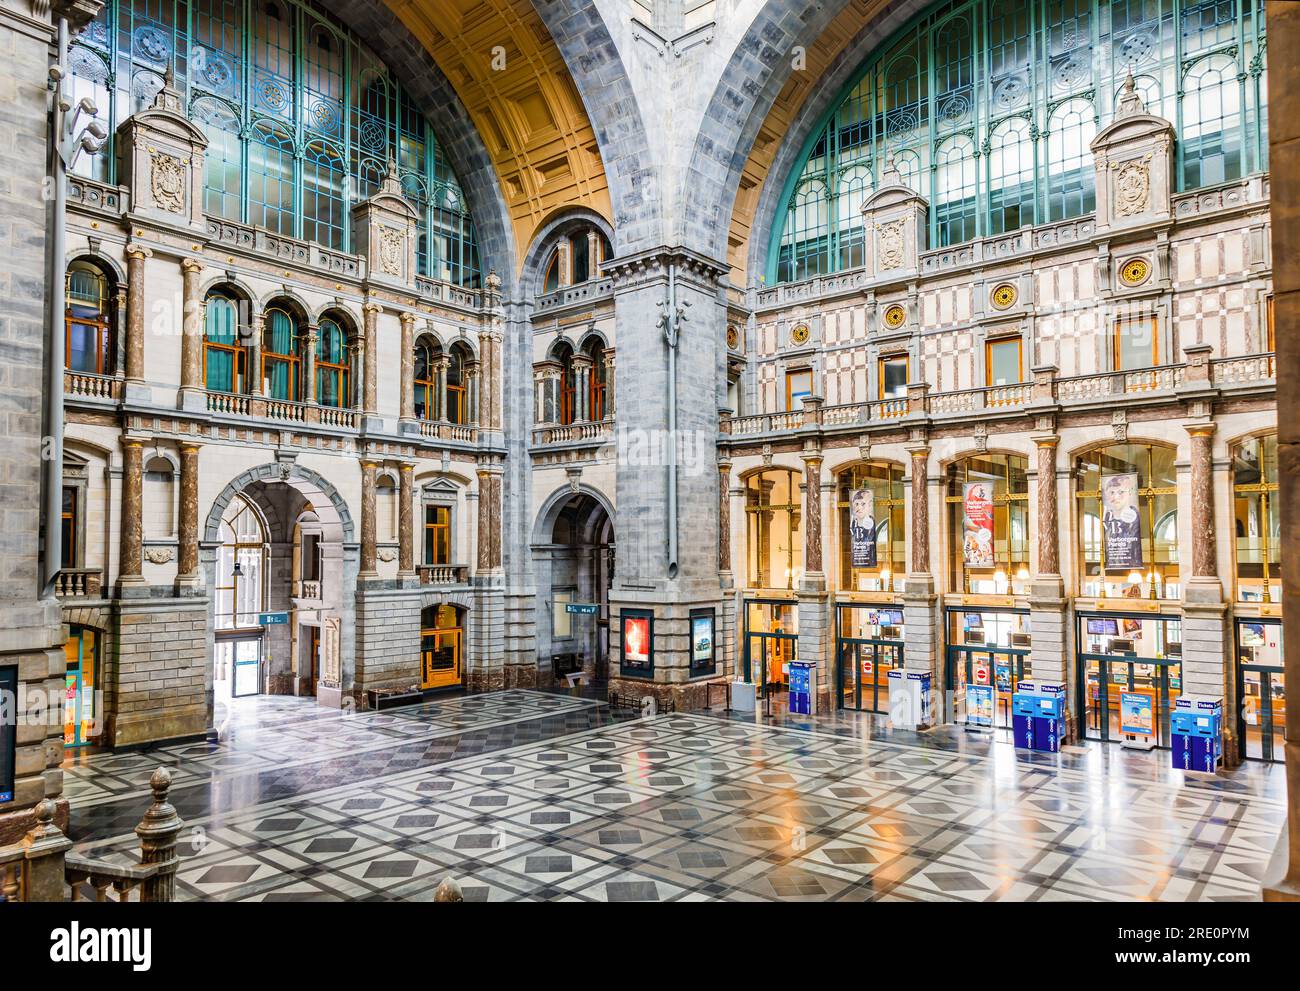 Antwerp, Belgium - June, 17, 2023: Antwerpen-Centraal railway station, is the main railway station in Antwerp, Belgium. It is considered one of the mo Stock Photo